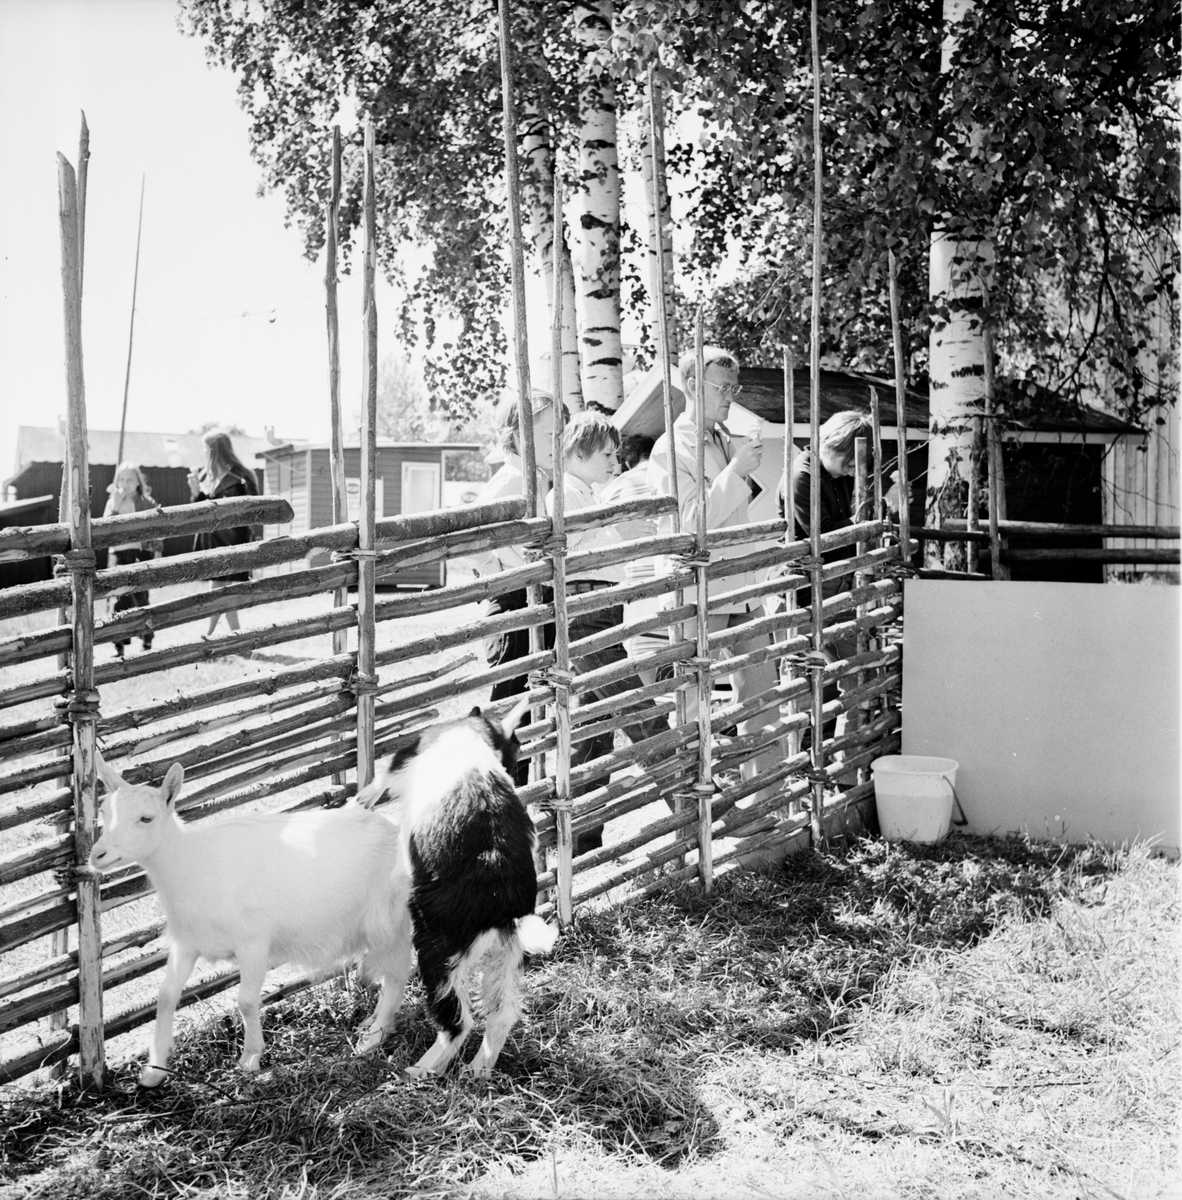 Arbrå,
Jordbrukets dag på Nytorp,
Juni 1971